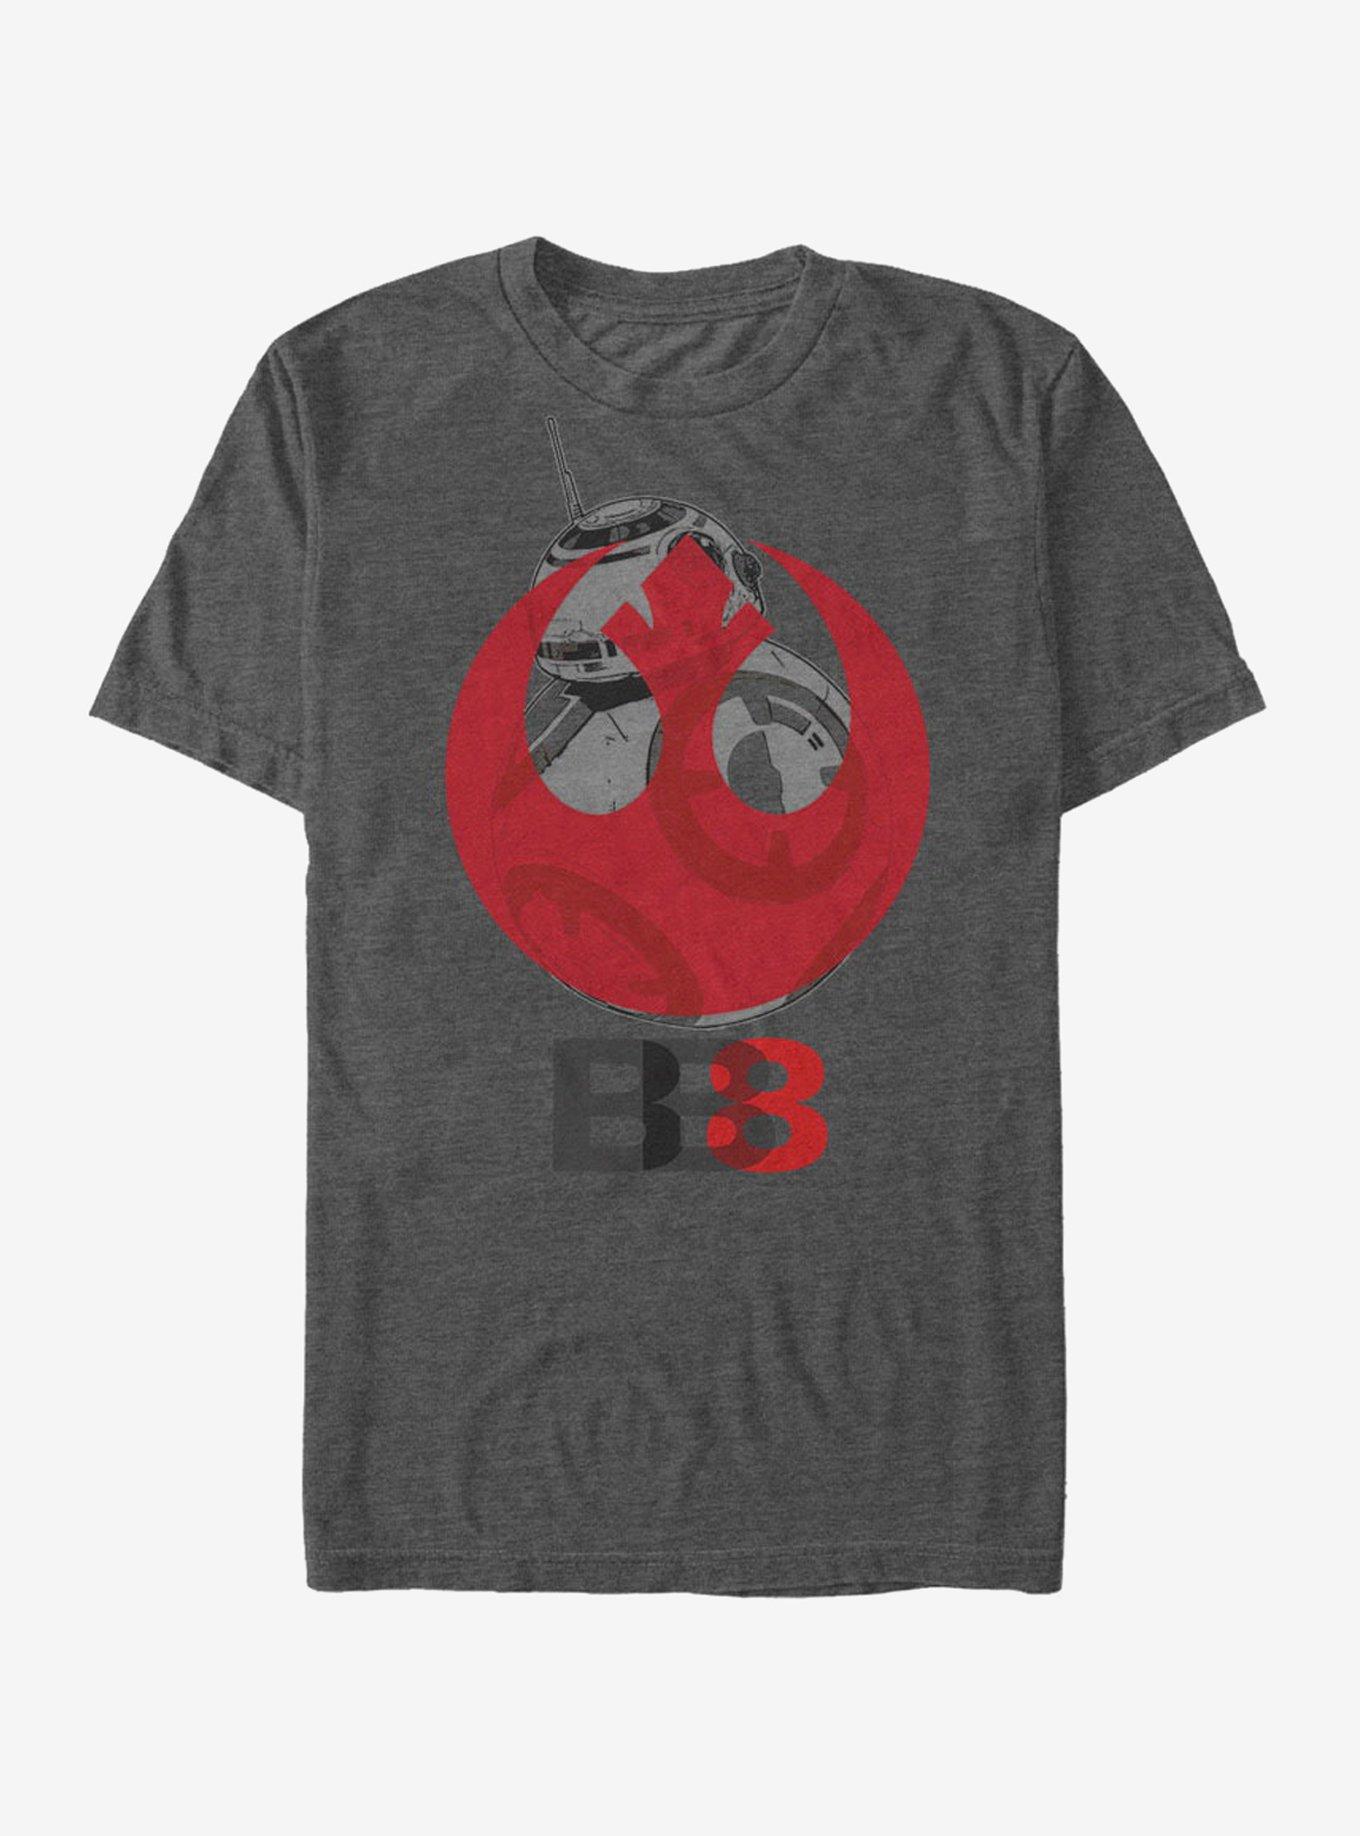 Star Wars BB-8 Rebel Emblem T-Shirt, CHAR HTR, hi-res